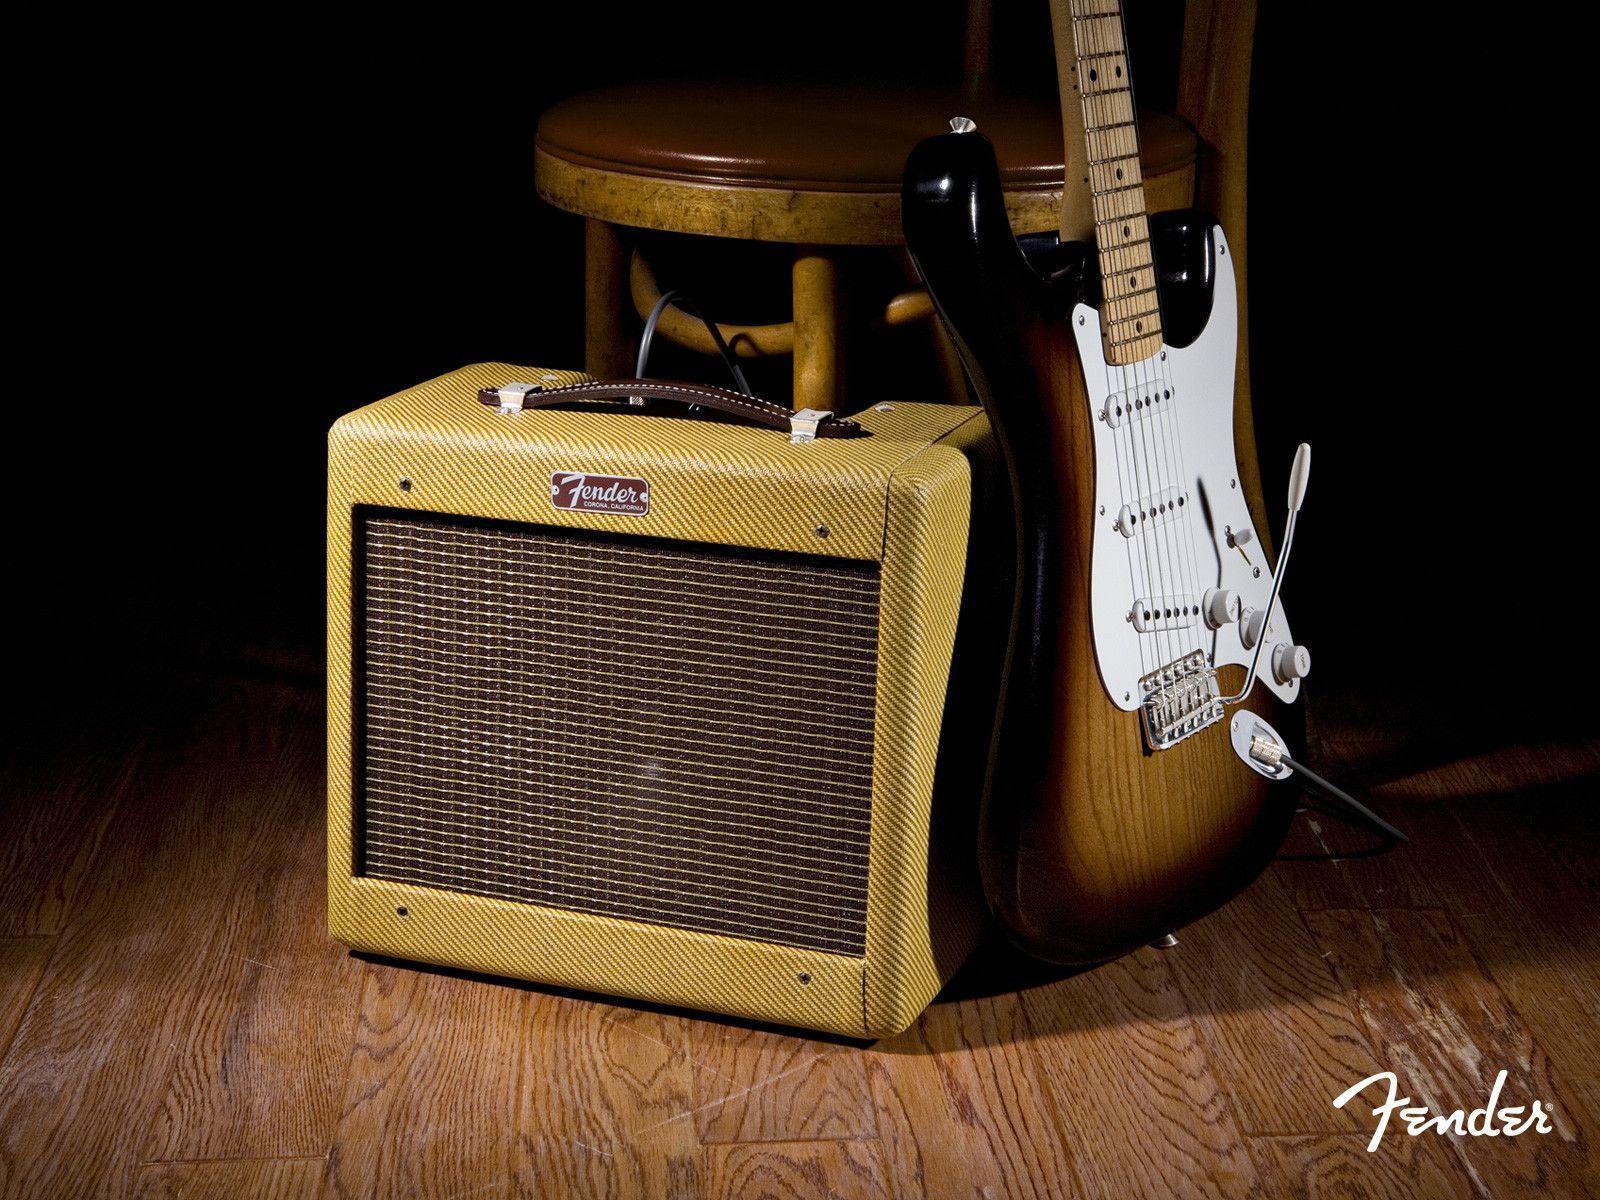 image For > Fender Stratocaster Wallpaper